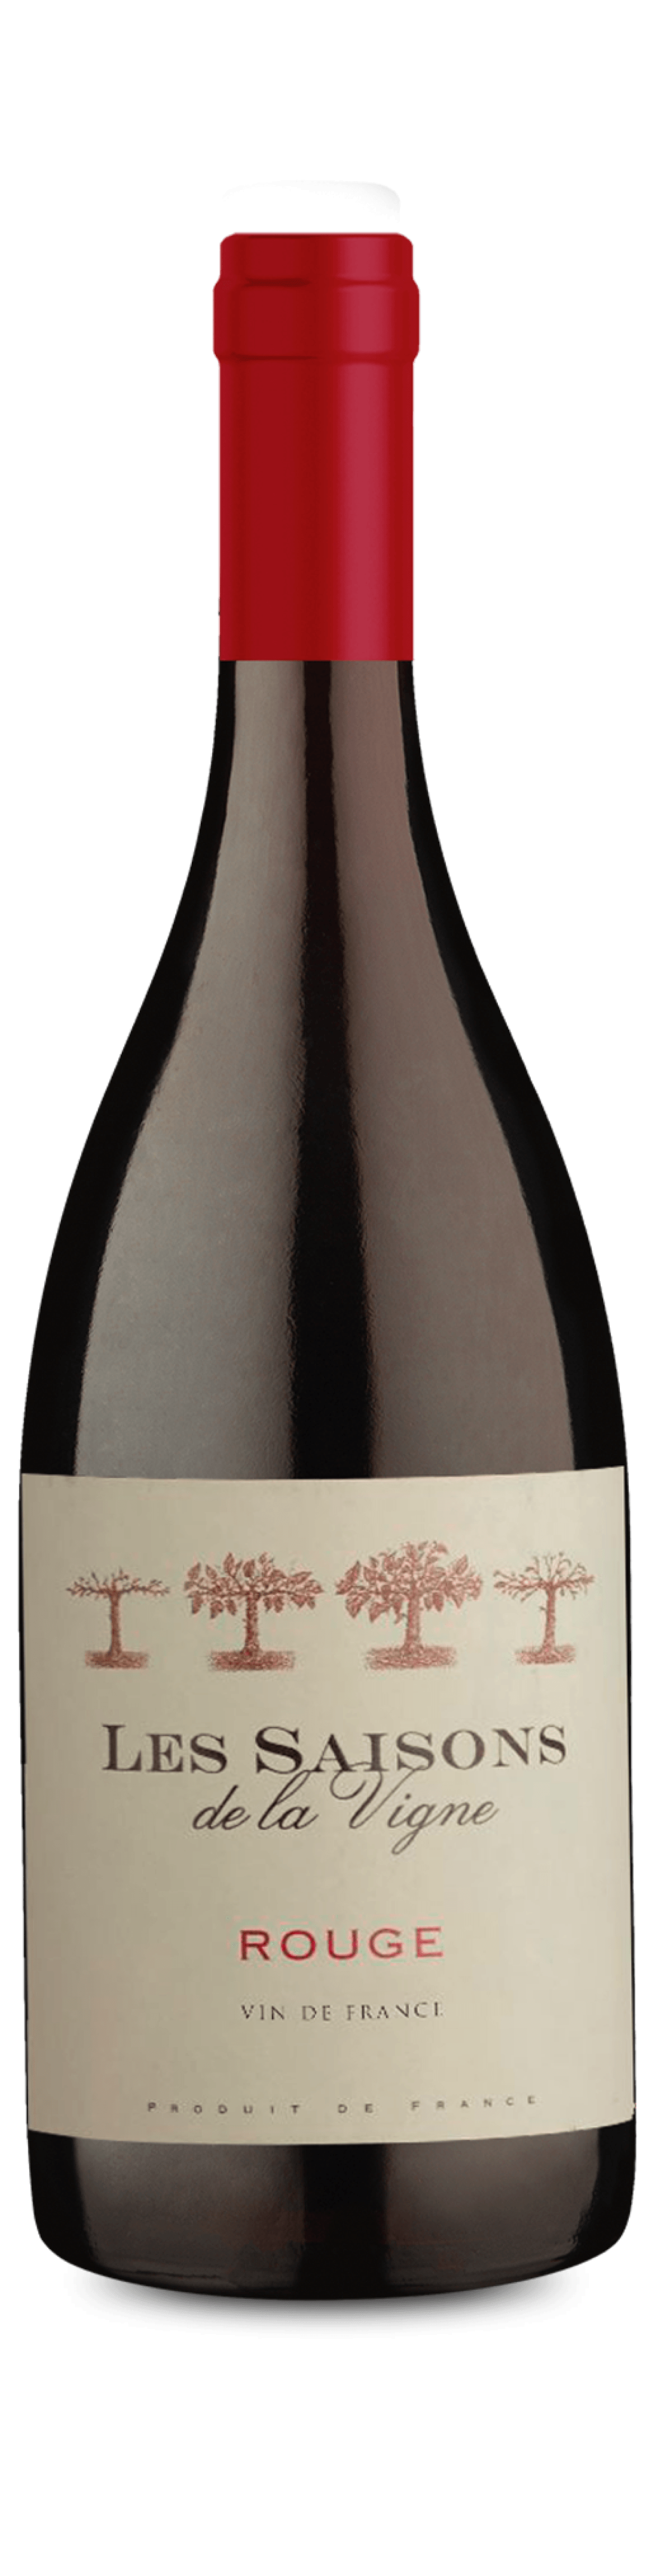 Les Saisons De La Vigne Vin De France - Wine.com.mx